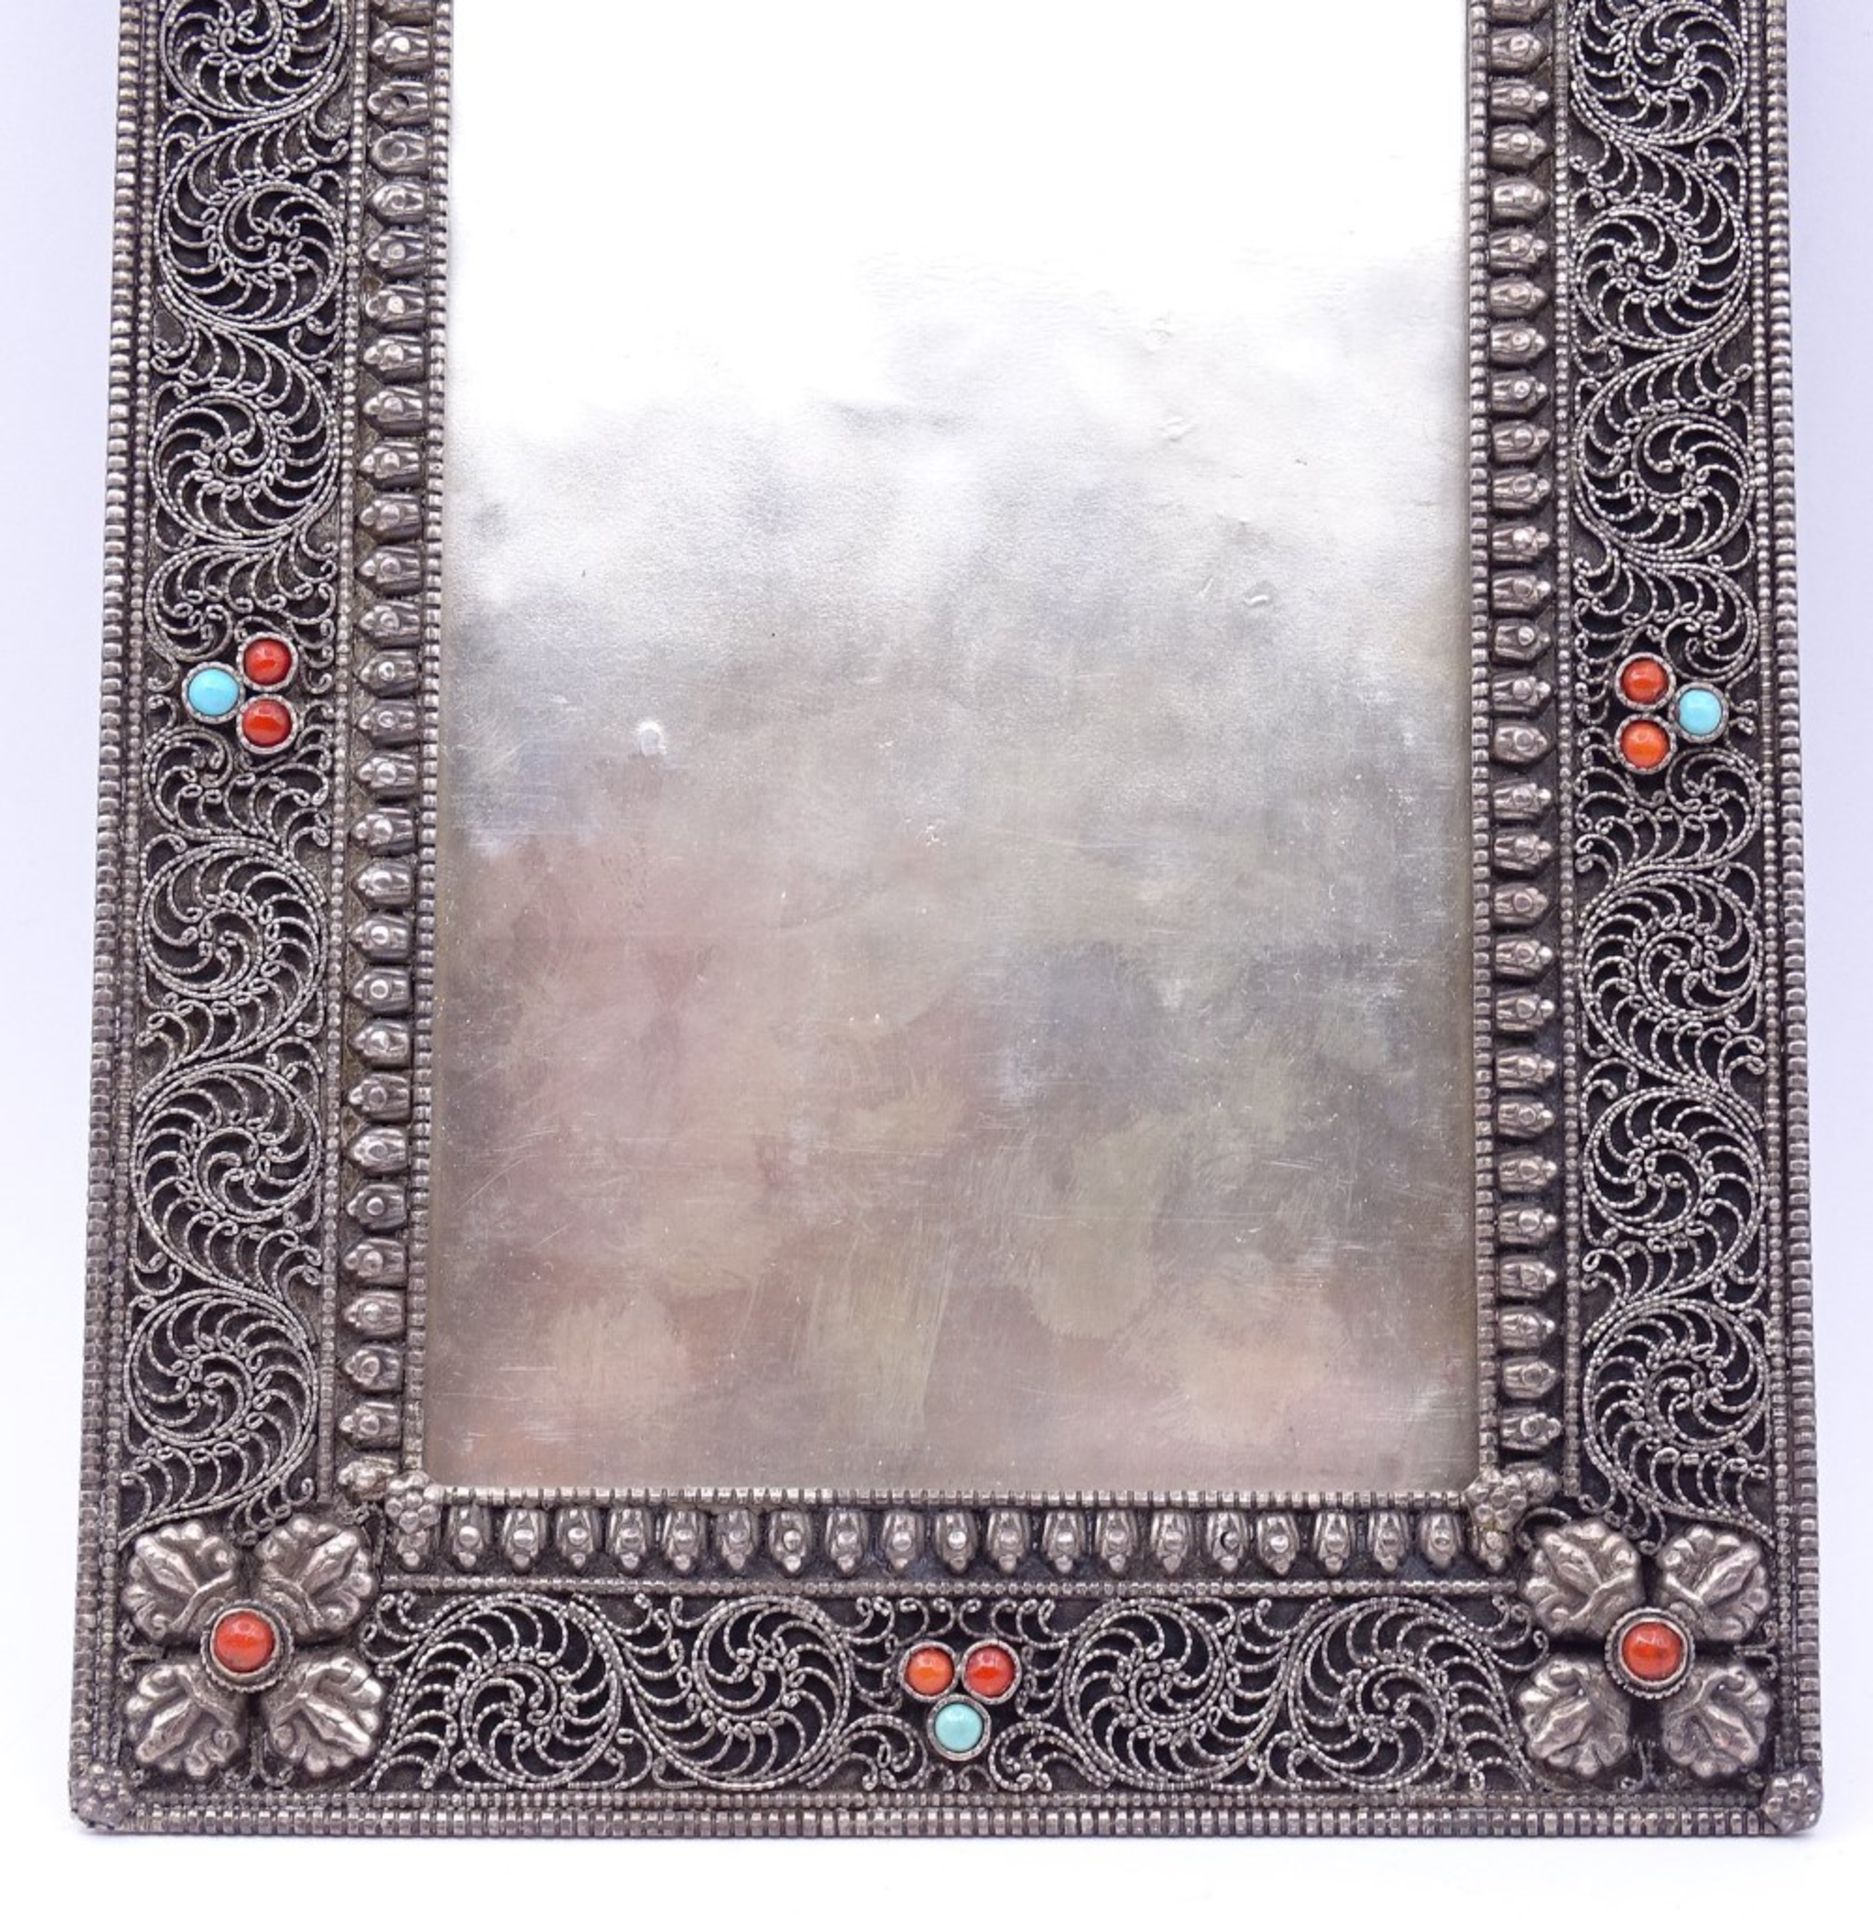 Tischfoto Rahmen in Sterling Silber mit Koralle und türkise,17,5x13,5cm,mit Glaseinsatz,Gew. - Bild 3 aus 5